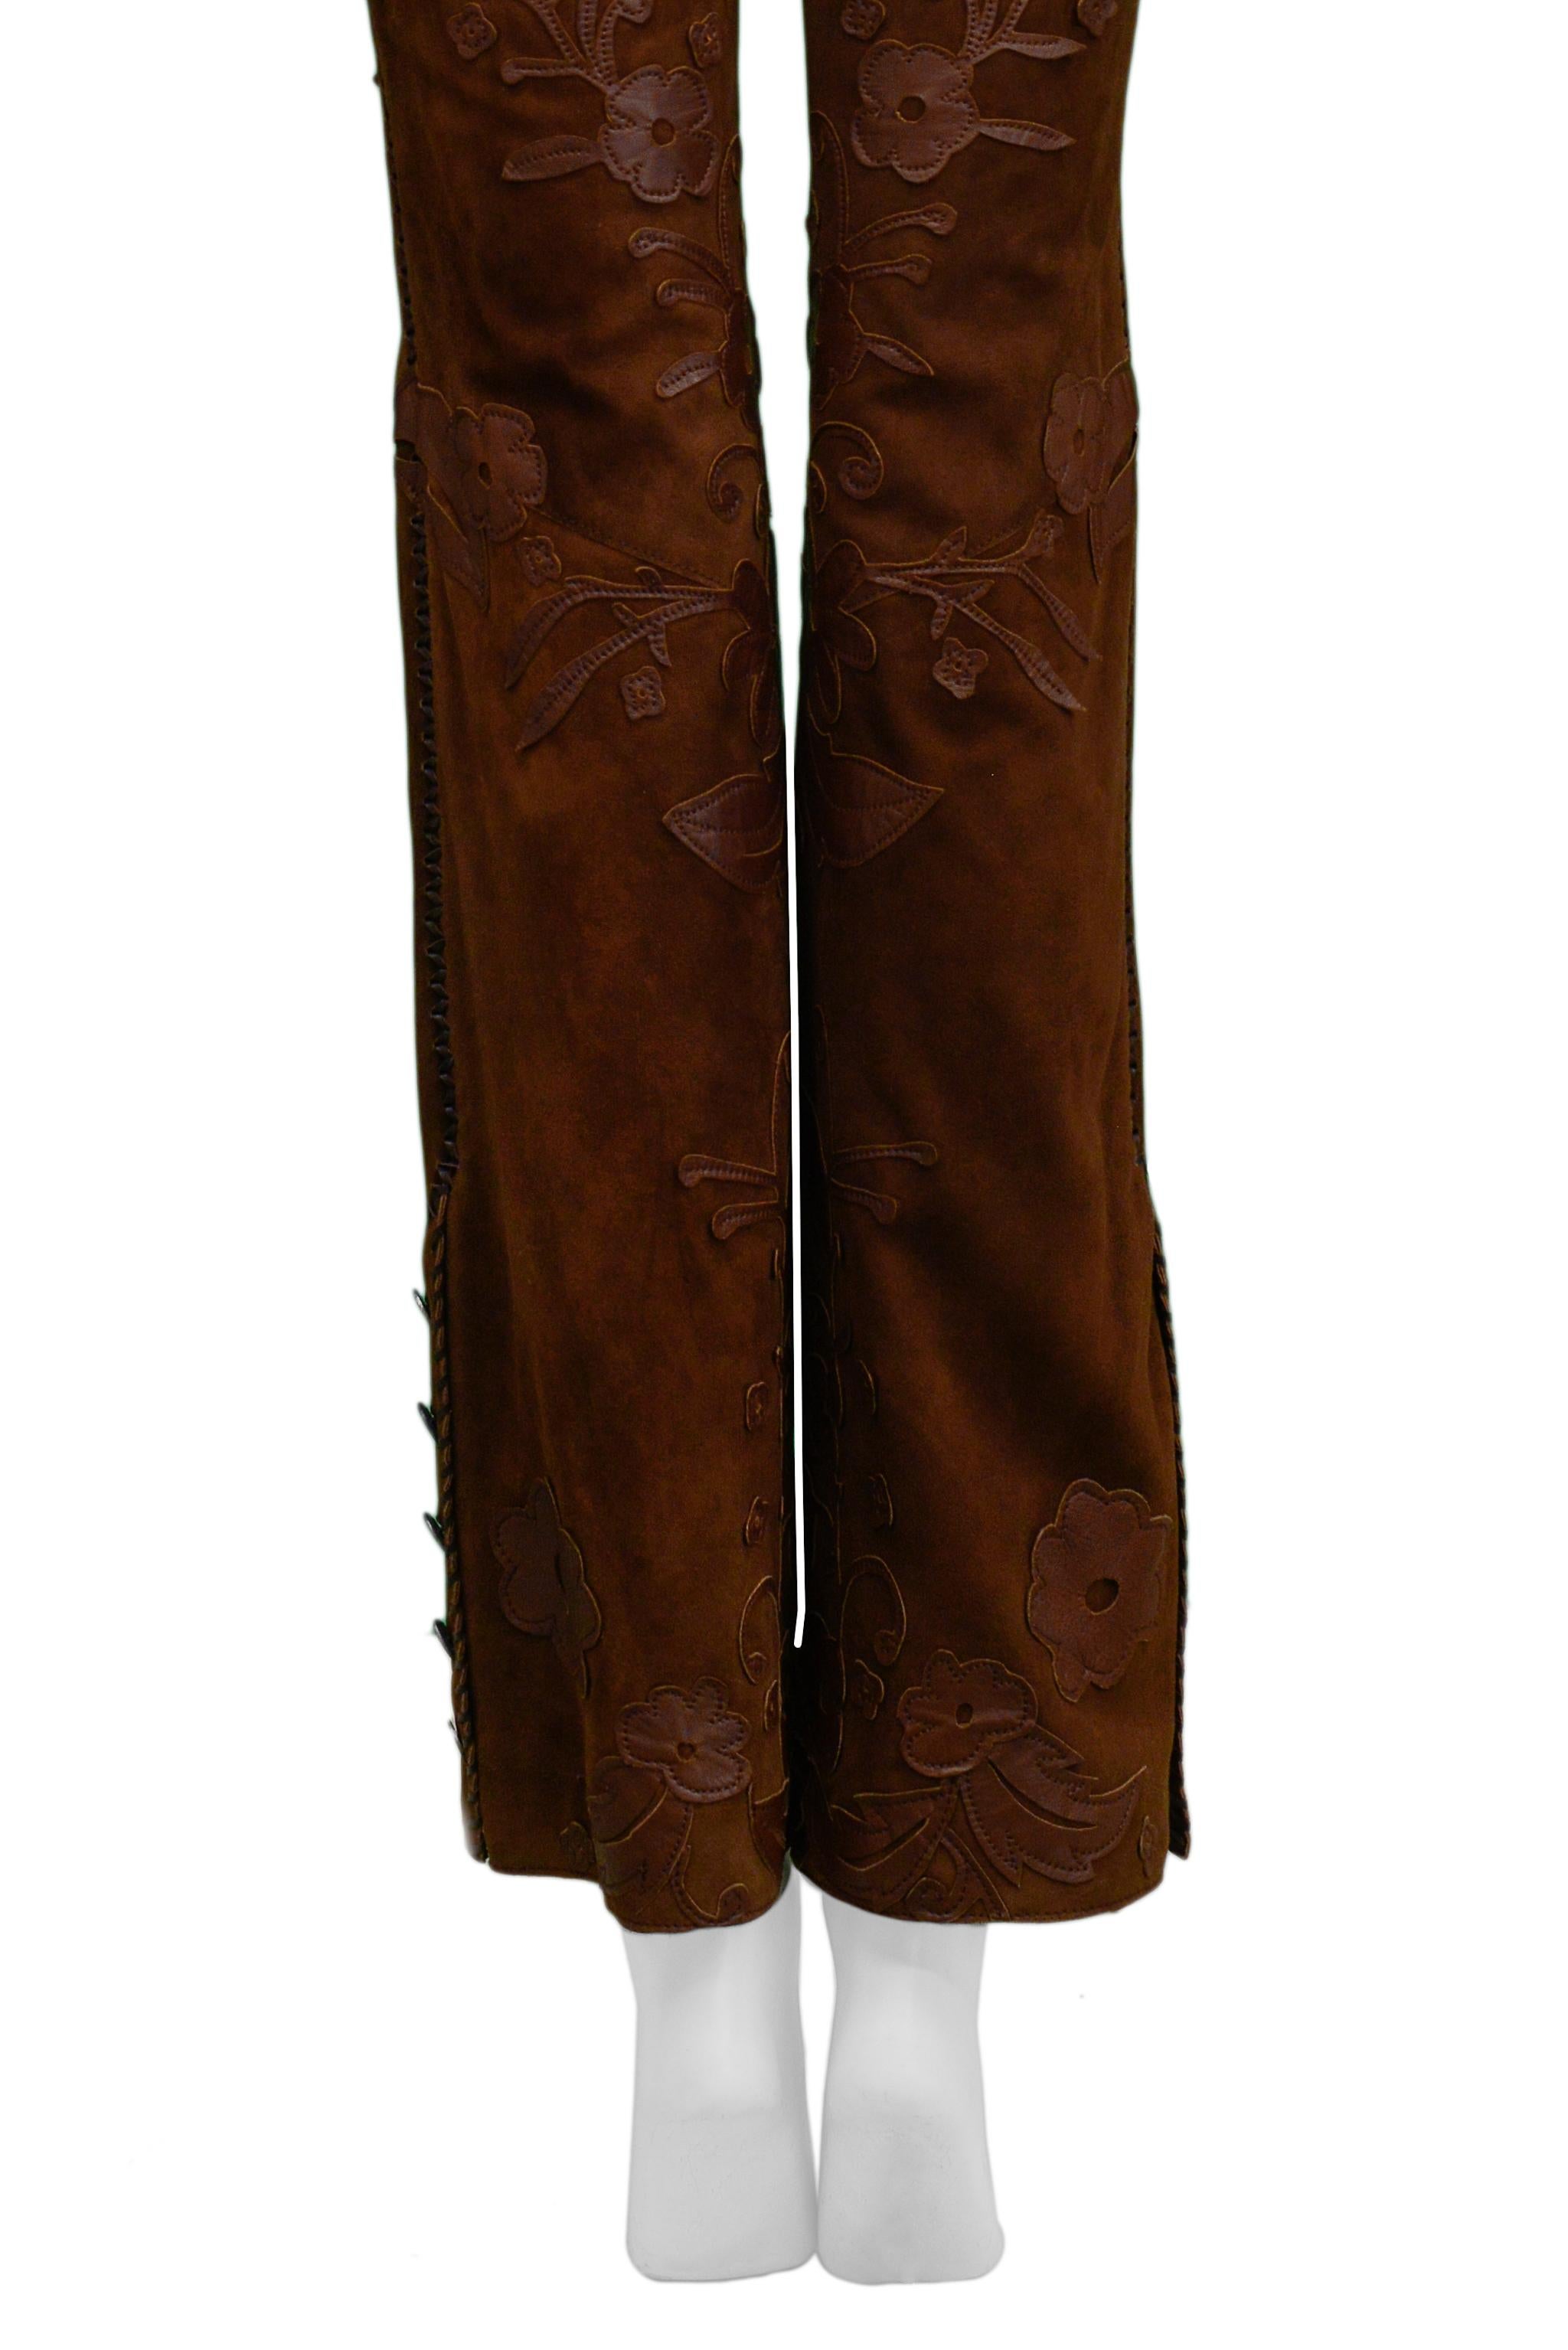 Dolce & Gabbana FLoral Applique Suede Pants 2002 3